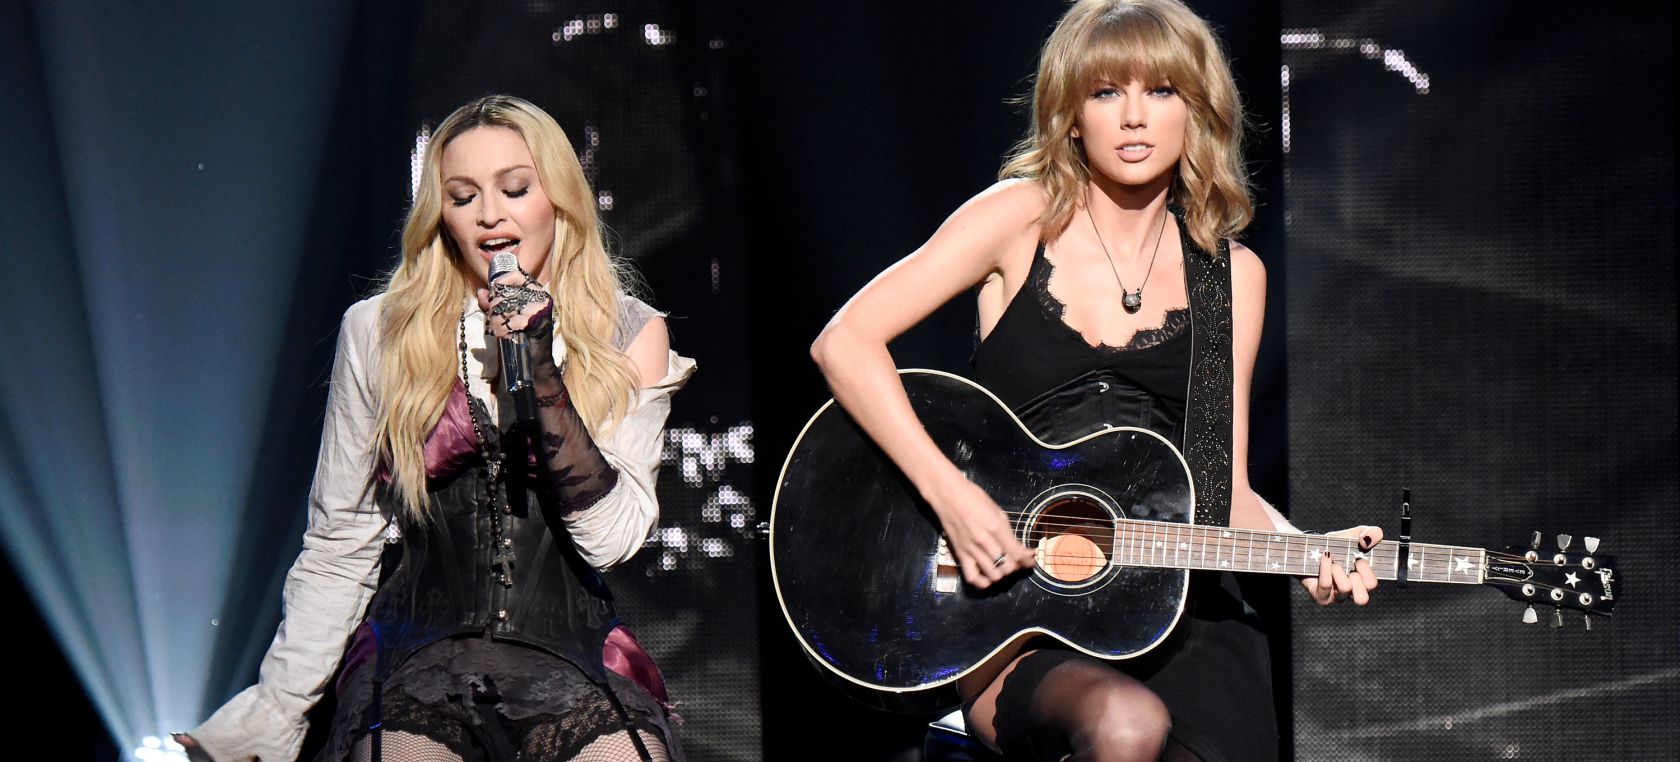 Día de la mujer: inspírate con frases motivadoras de Madonna y Taylor Swift